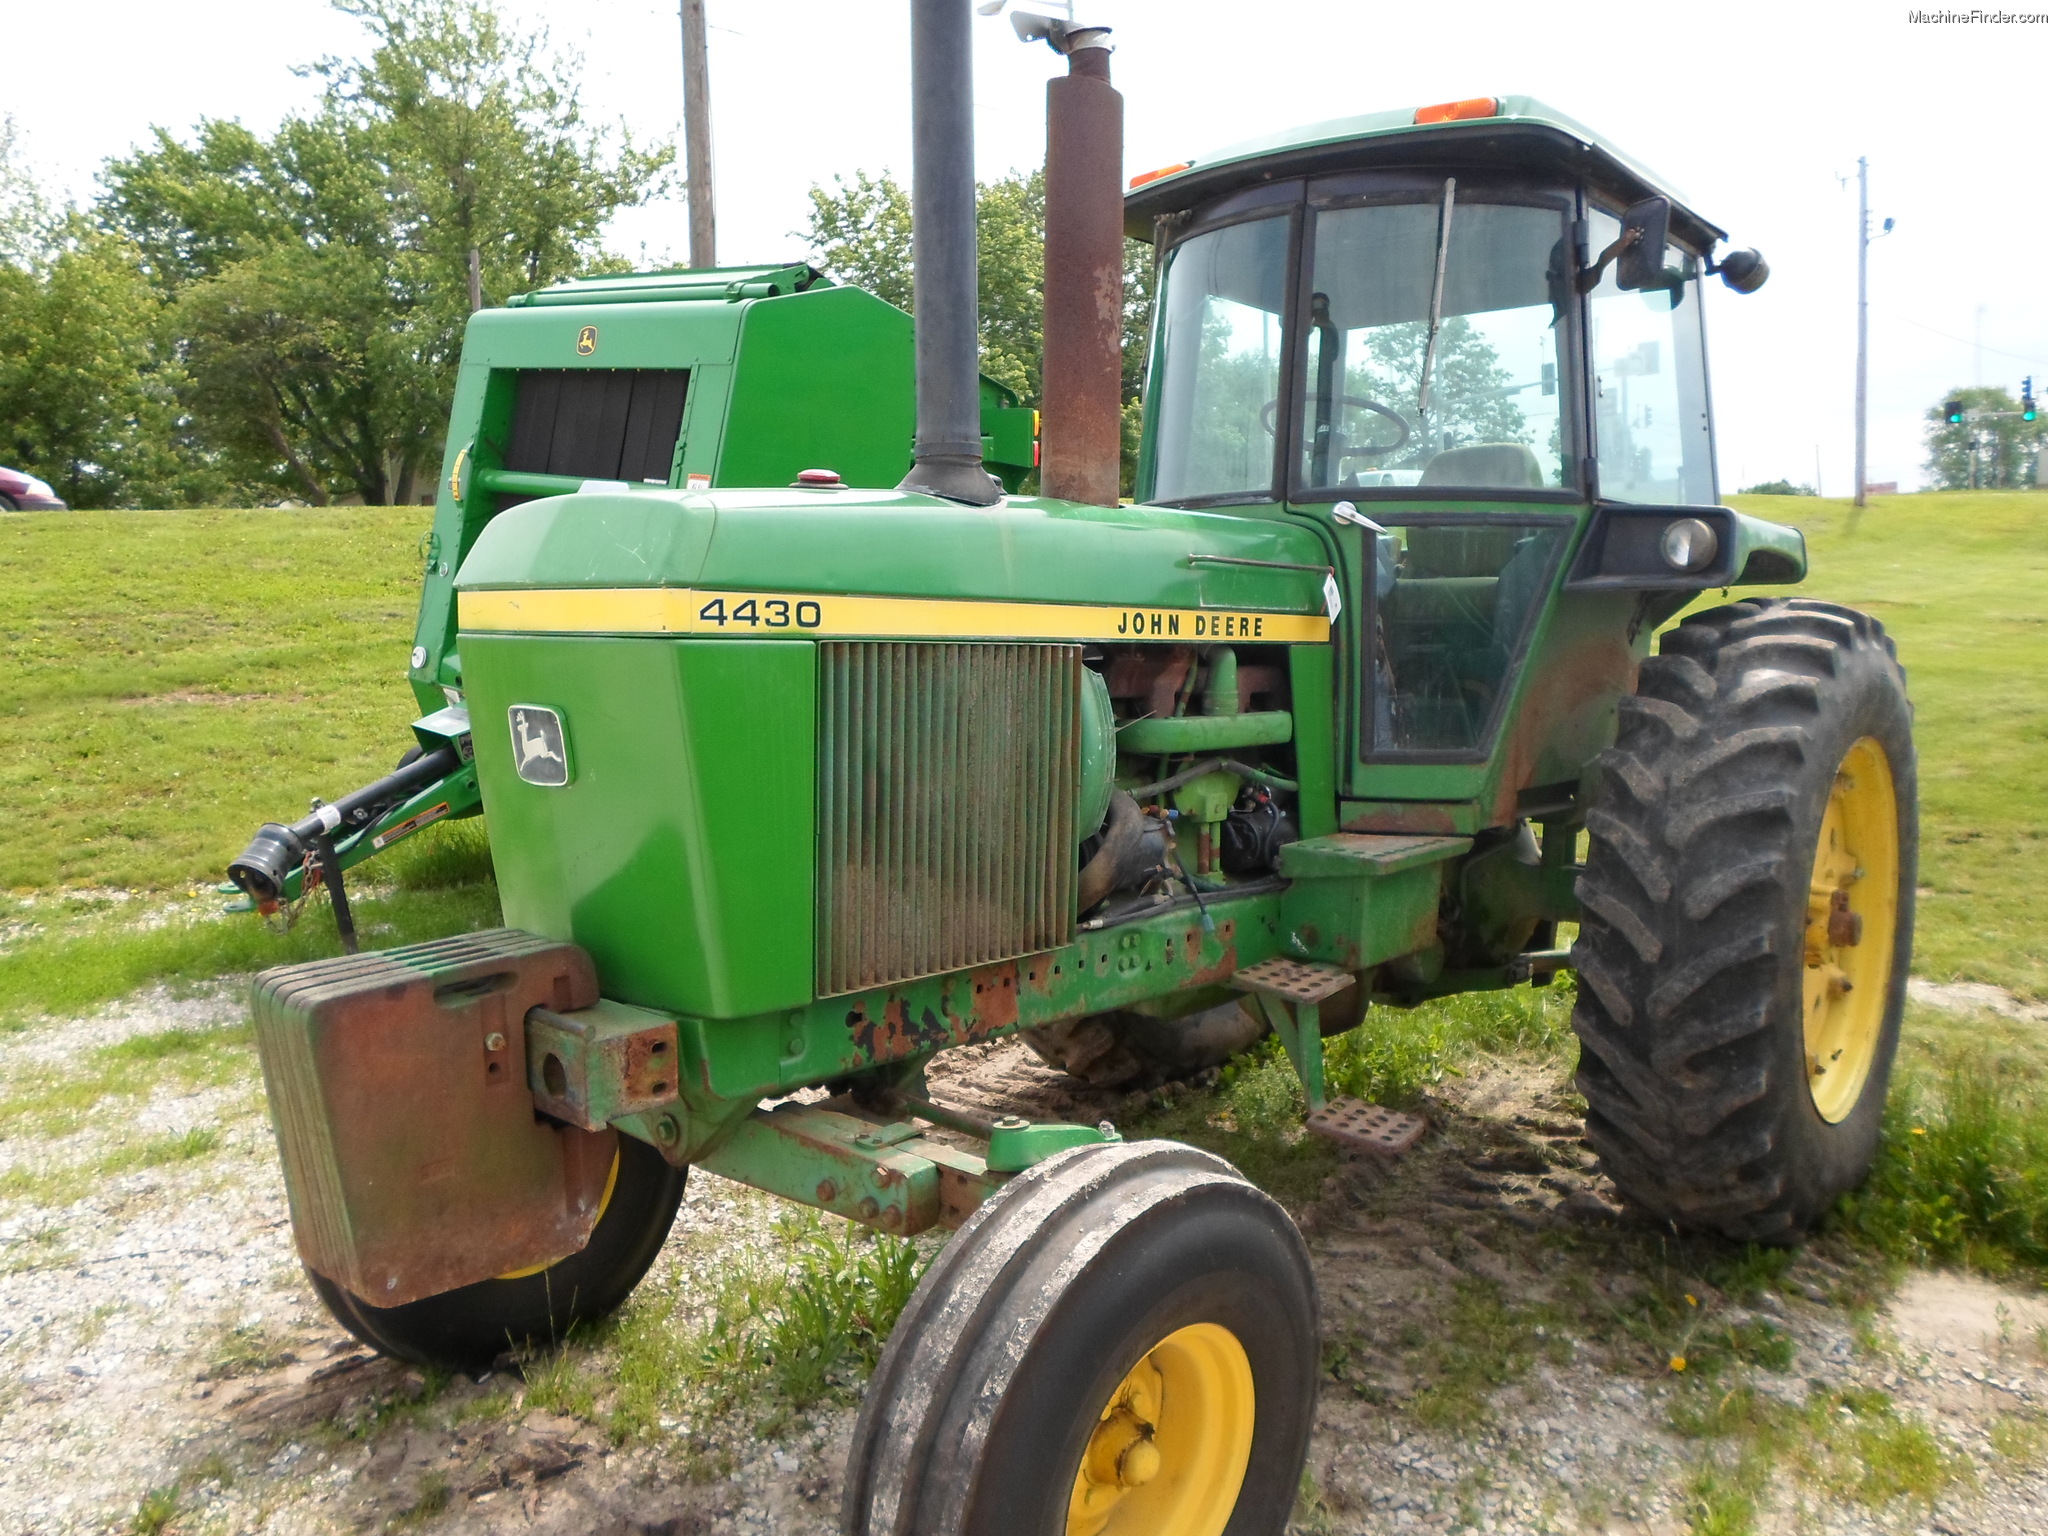 1976 John Deere 4430 Tractors Row Crop 100hp John Deere Machinefinder 6007